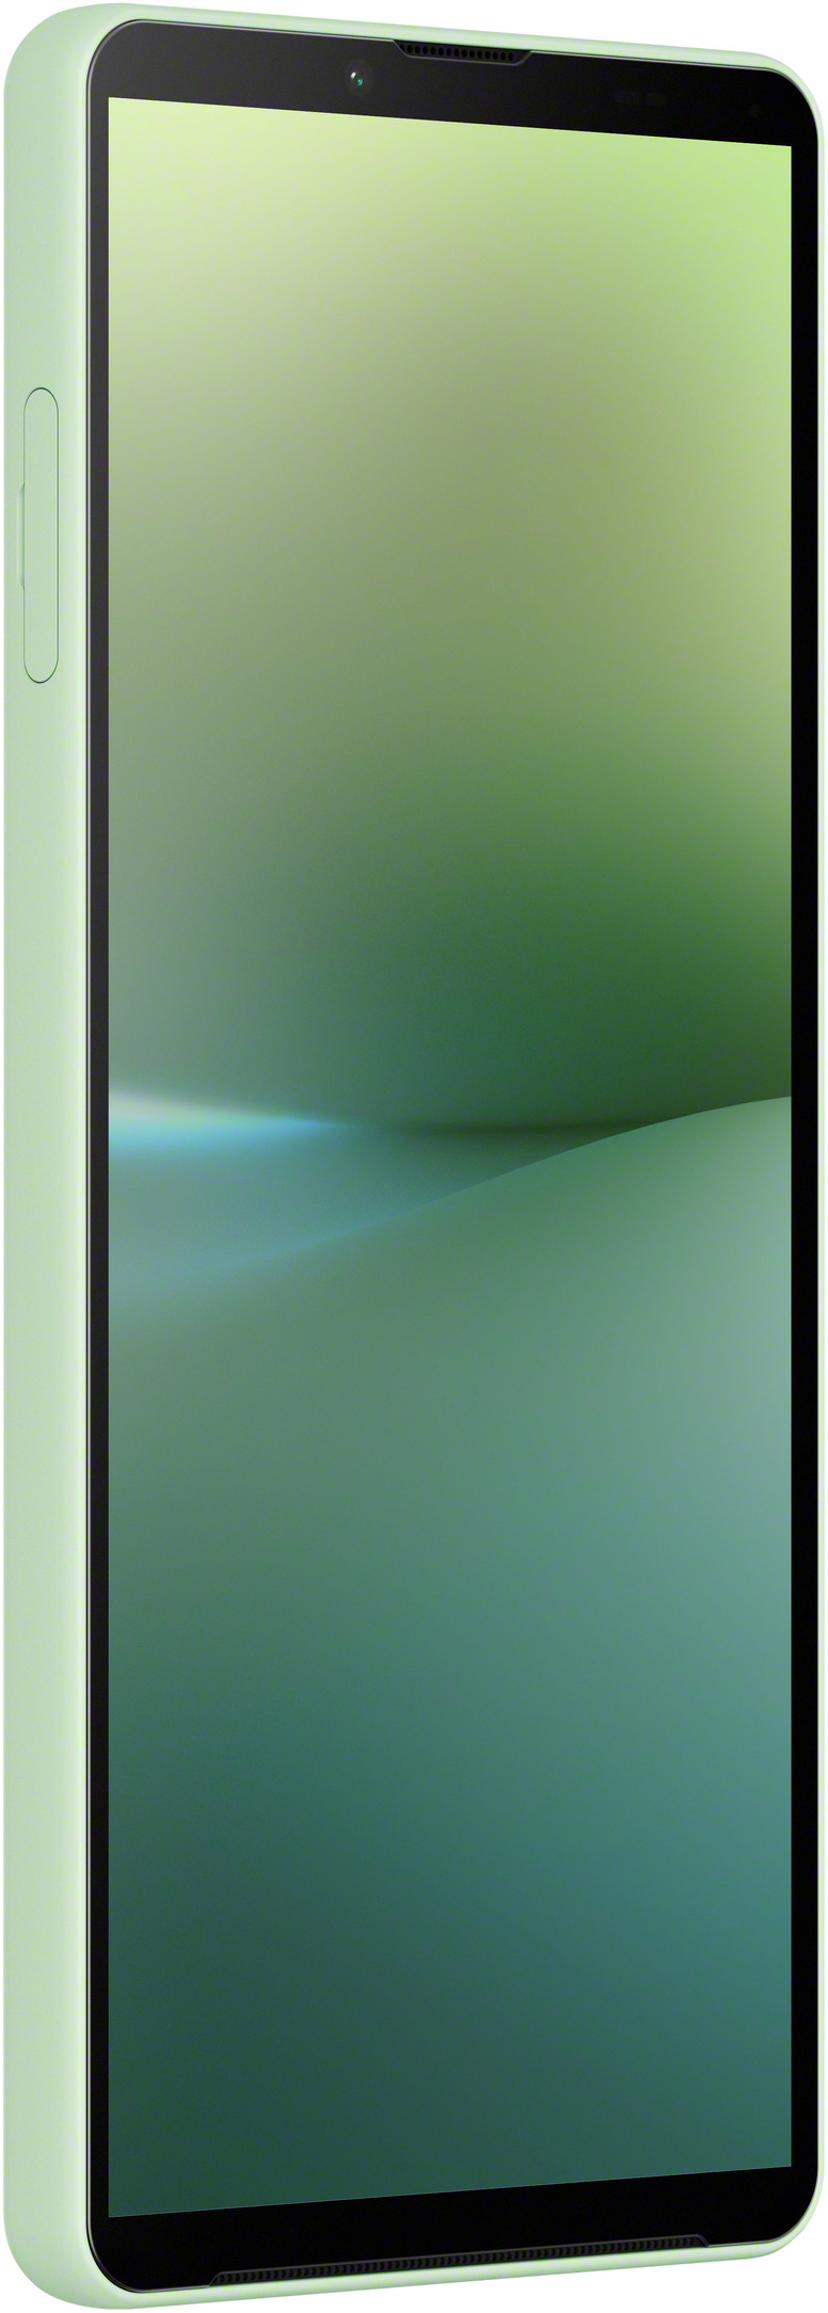 Sony XPERIA 10 V 128GB Kaksois-SIM Salvian vihreä